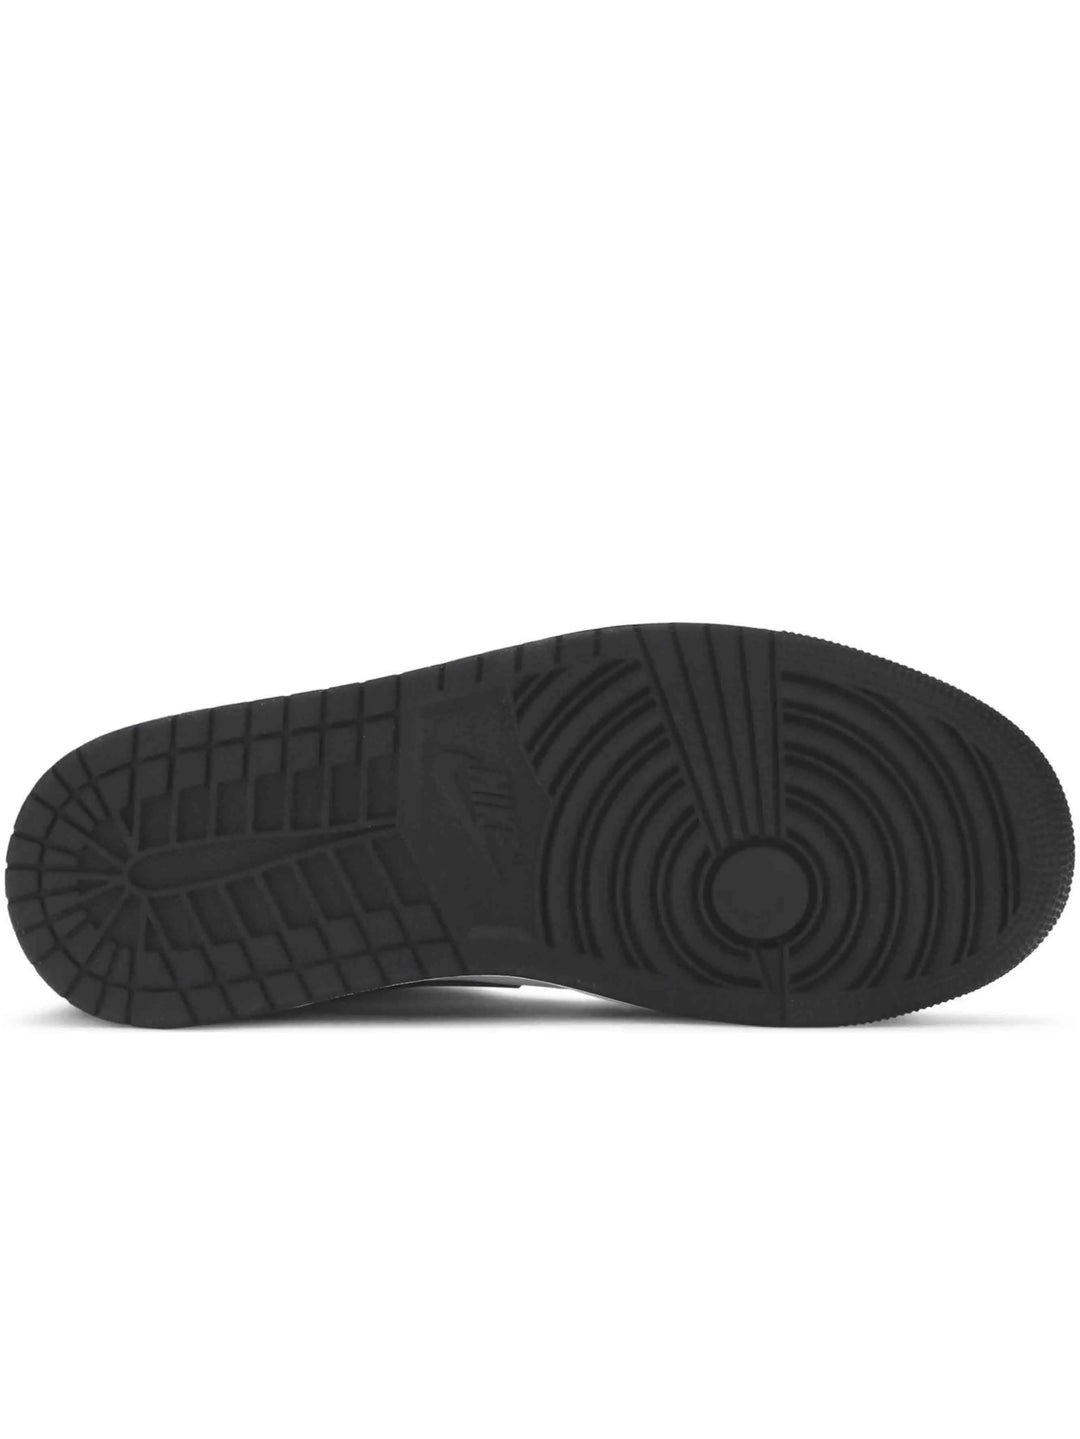 Nike Air Jordan 1 Mid Carbon Fiber Prior